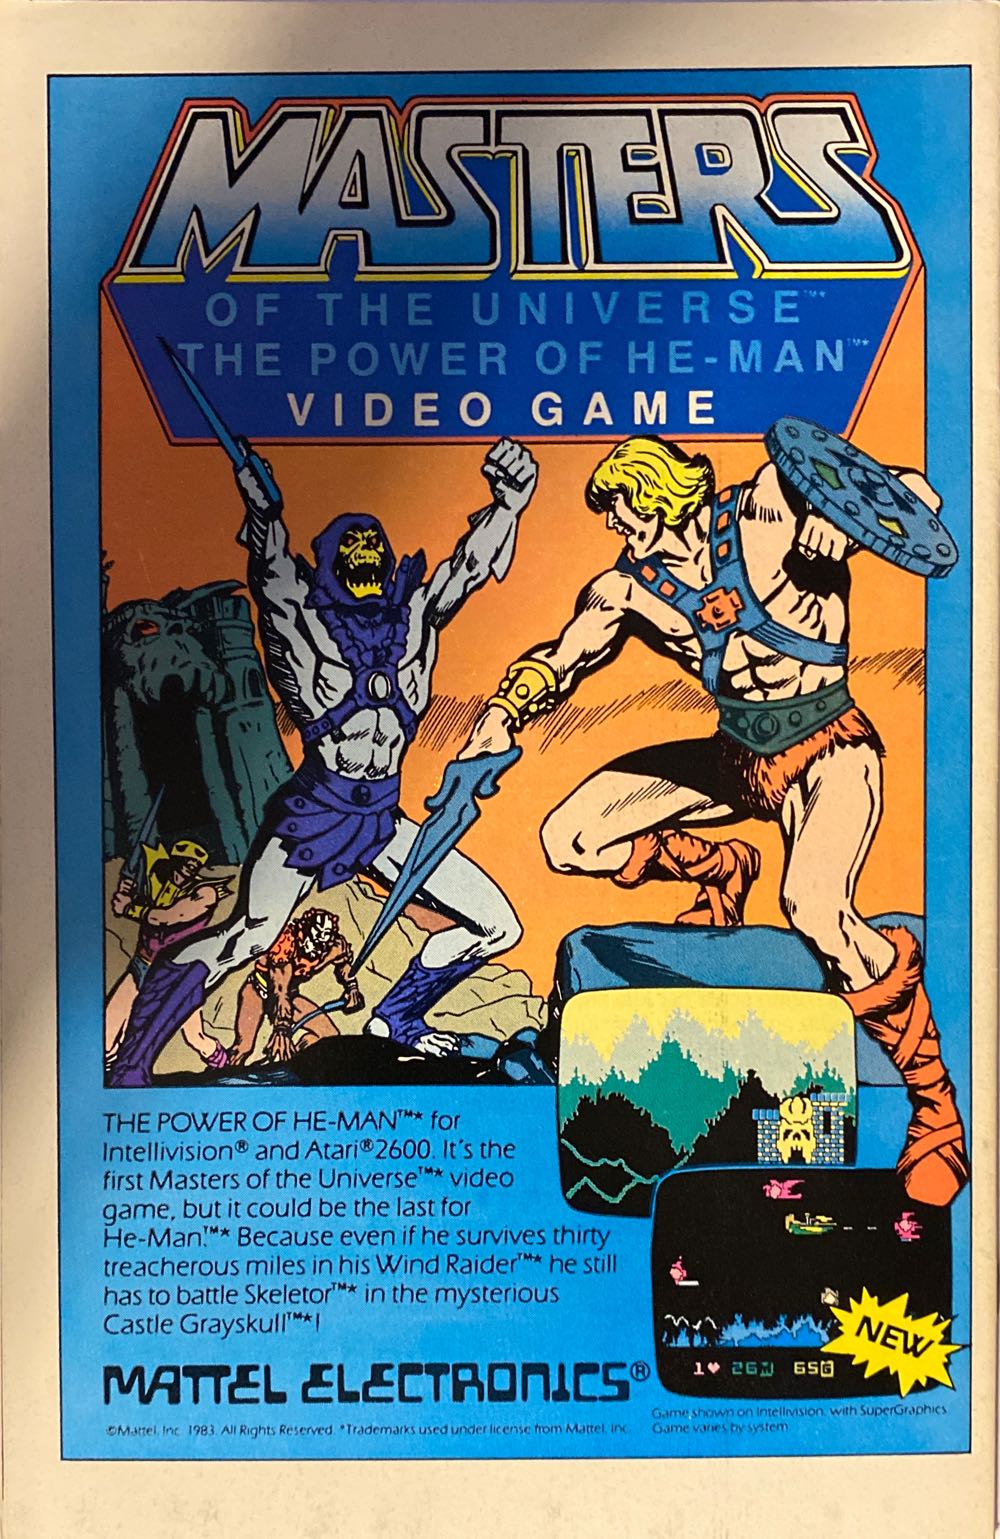 Legion of Super-Heroes (Vol.2) - DC Comics (309 - Mar 1984) comic book collectible - Main Image 2